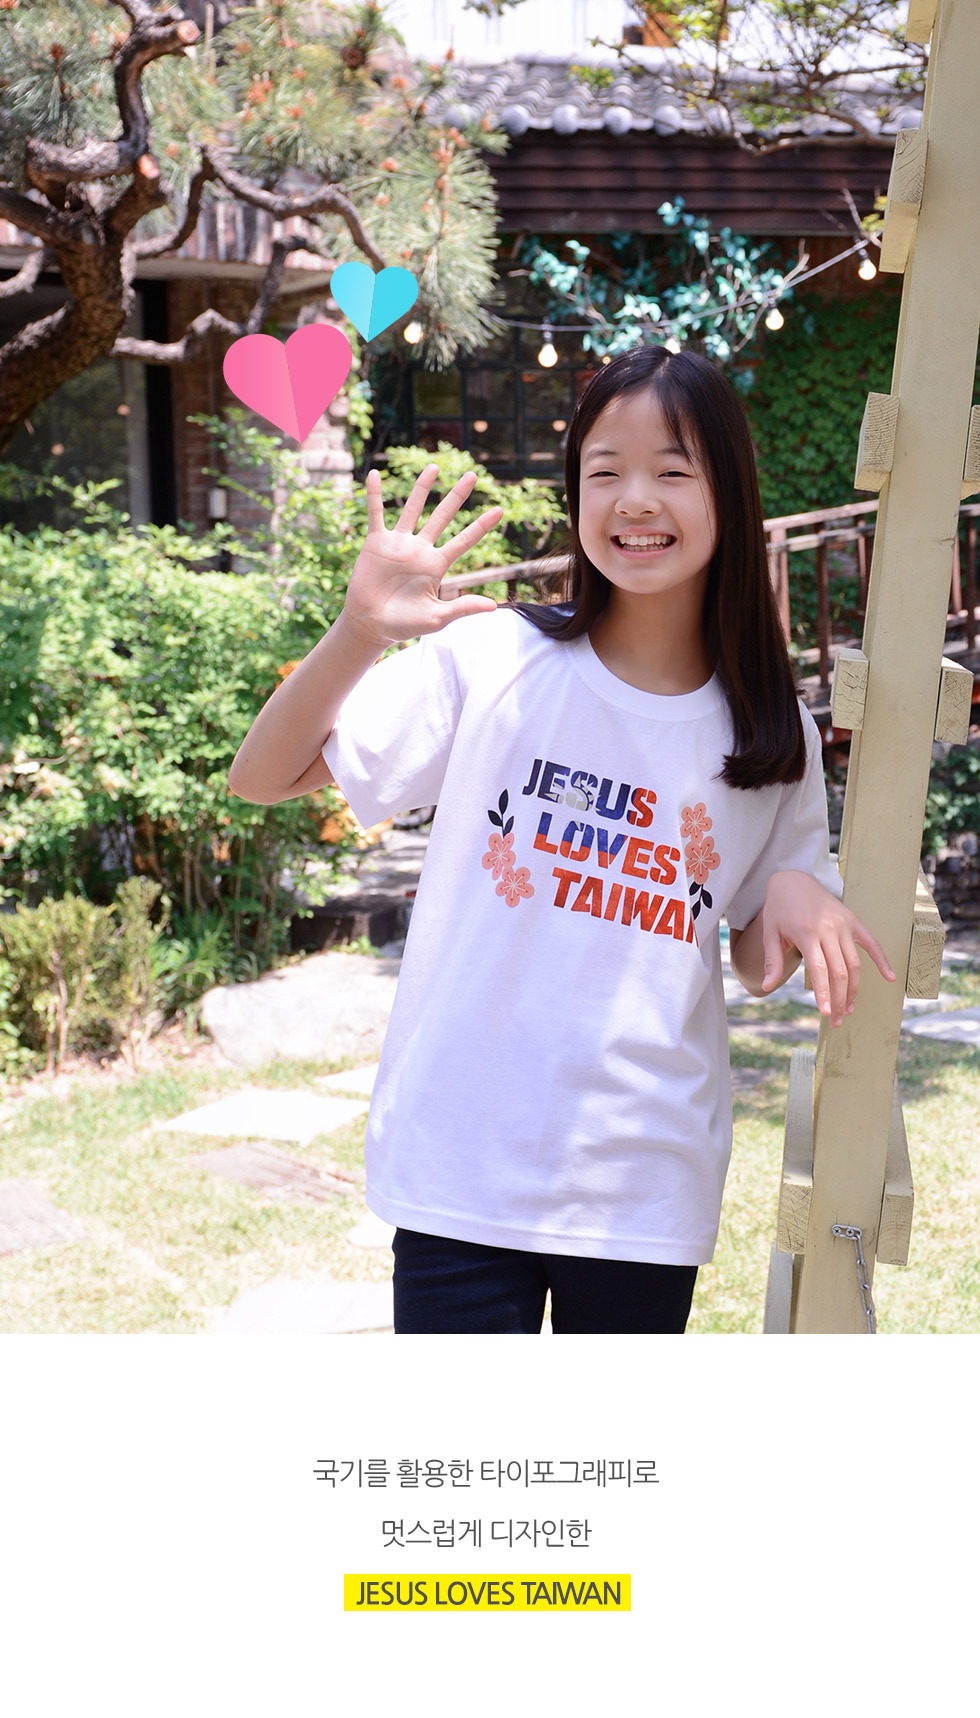 교회 단체티셔츠 타이완 선교티 (Jesus loves Taiwan) - 미션트립 단체티셔츠 아동티셔츠(대만선교) 